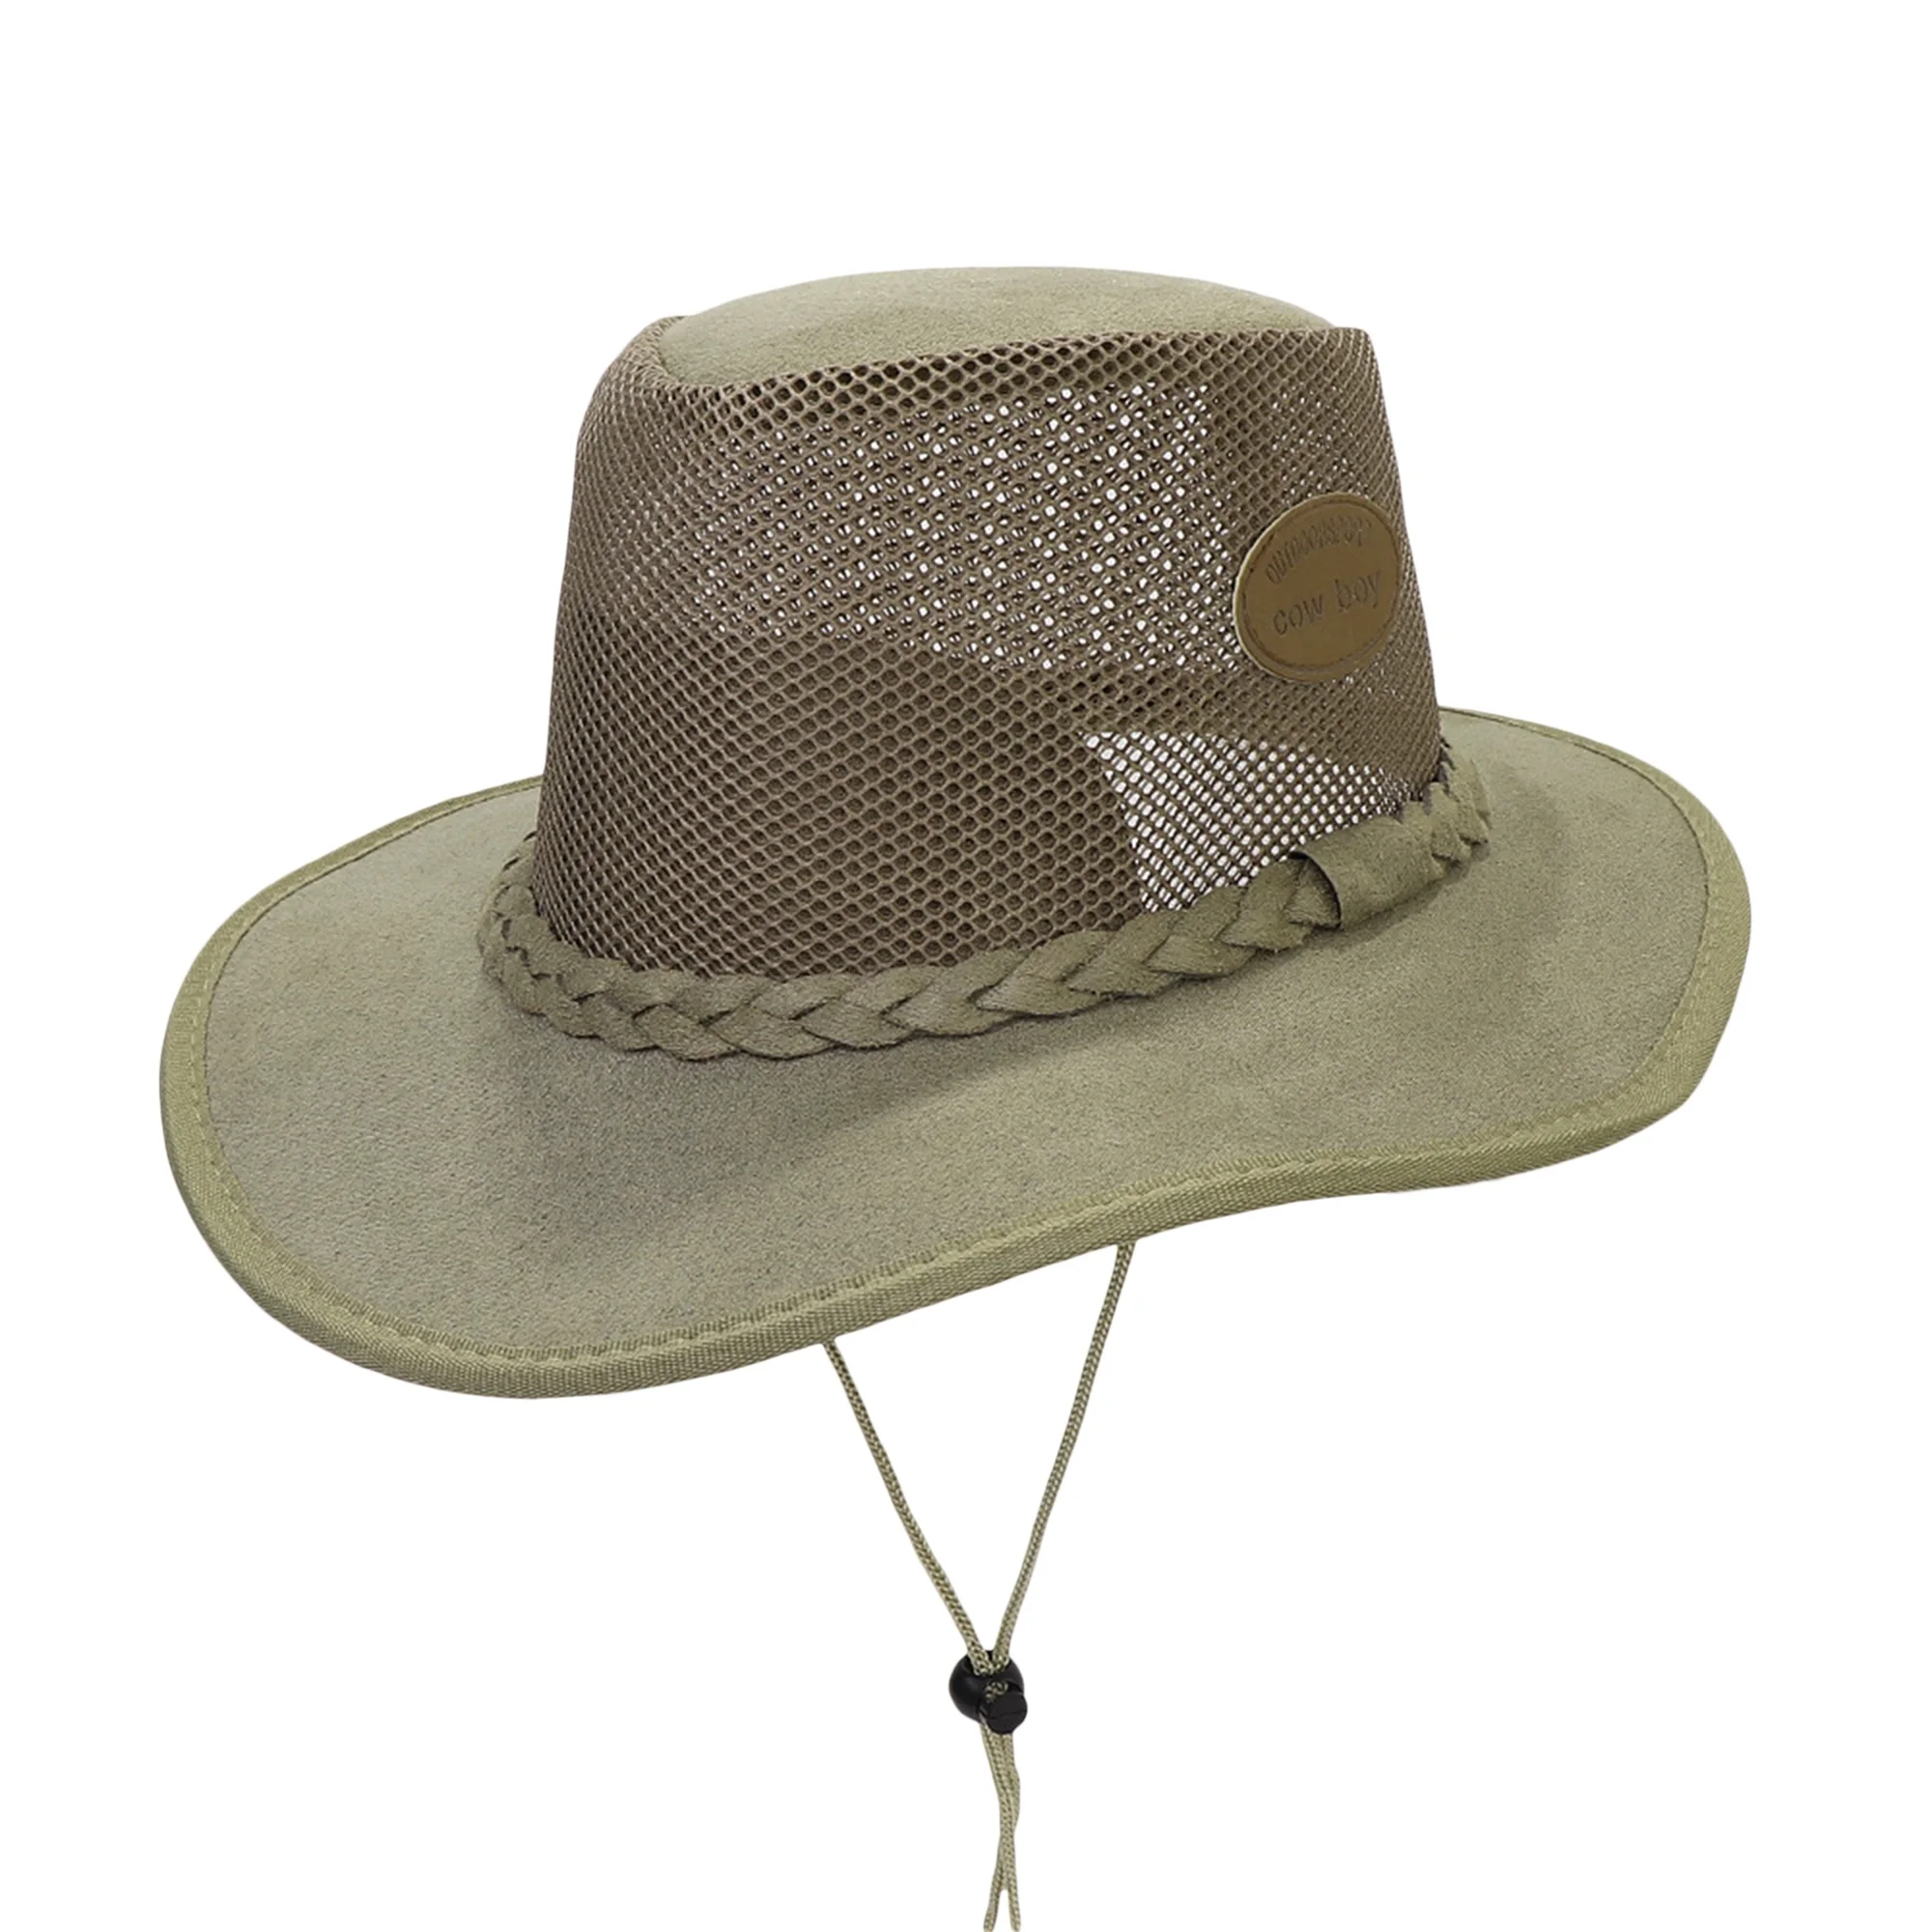 

Мужская Ковбойская шляпа с широкими полями, Легкая сетчатая, в западном стиле, для активного отдыха, пляжа, походов, Солнцезащитная